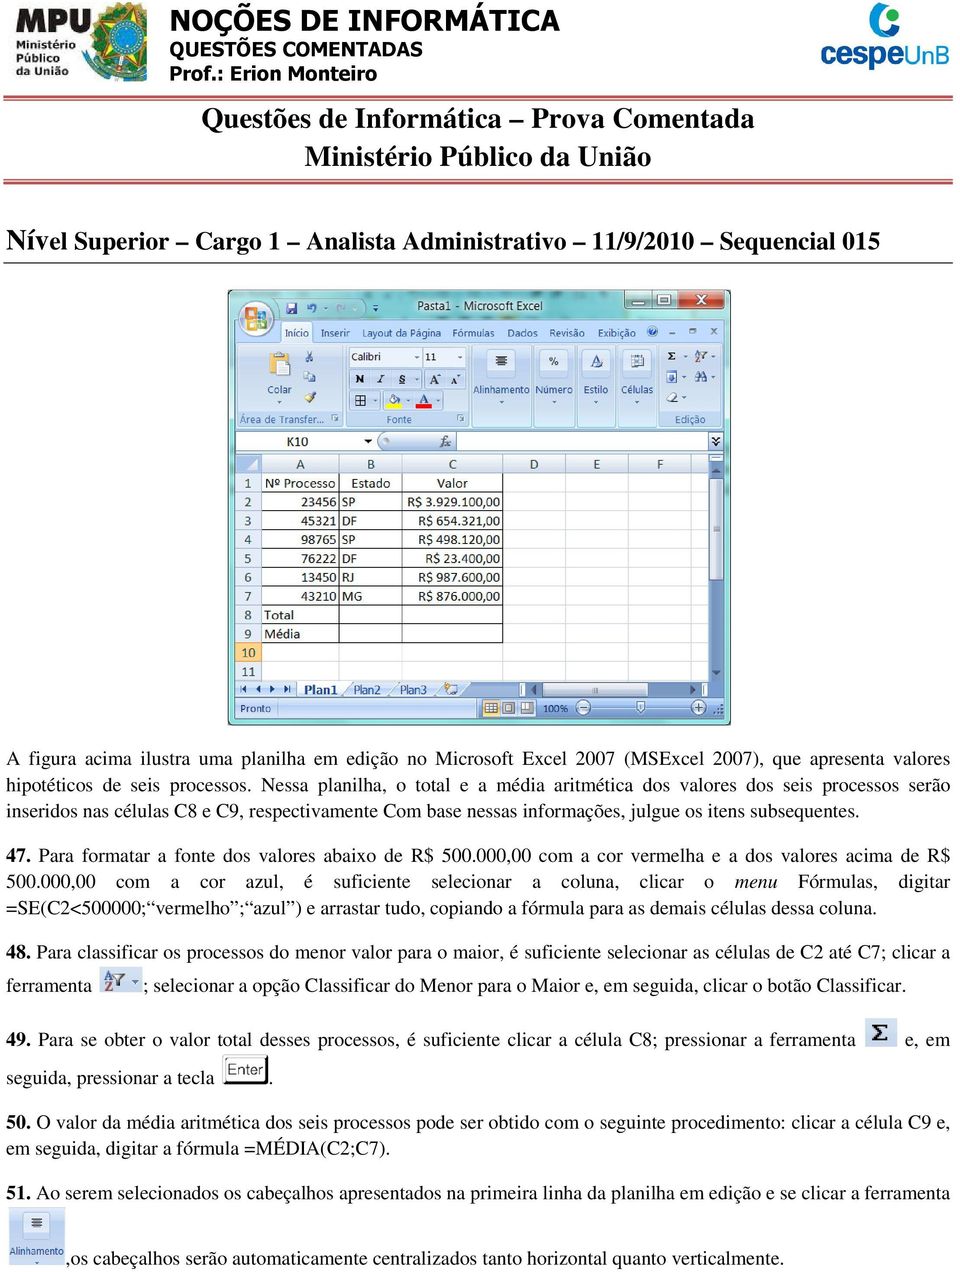 edição no Microsoft Excel 2007 (MSExcel 2007), que apresenta valores hipotéticos de seis processos.